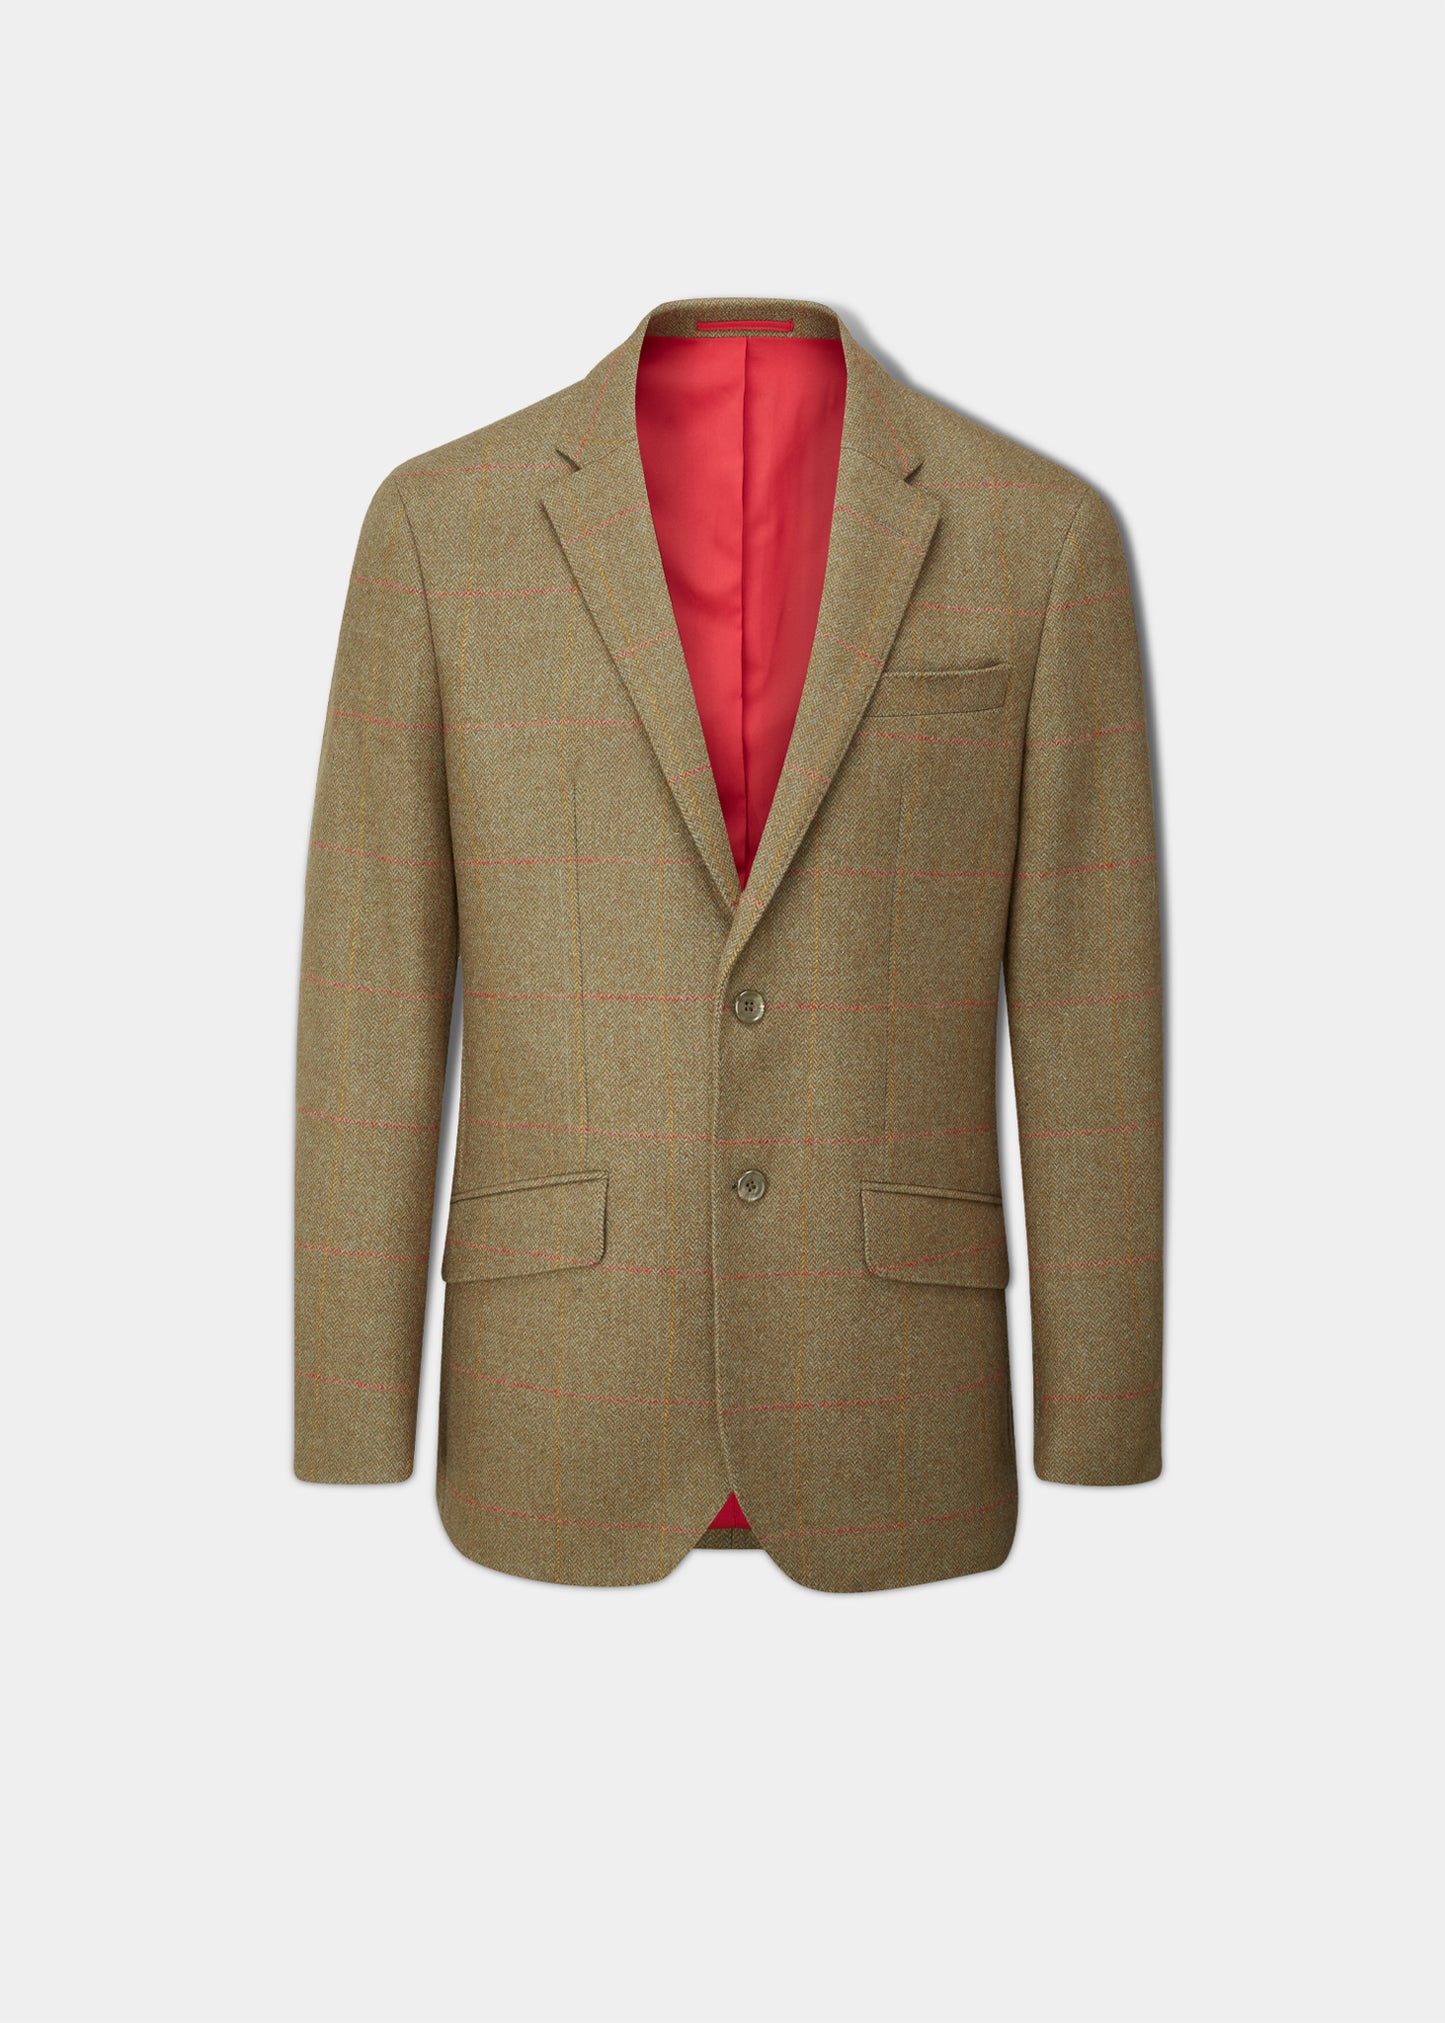 Combrook Men's Tweed Sports Blazer In Hawthorn